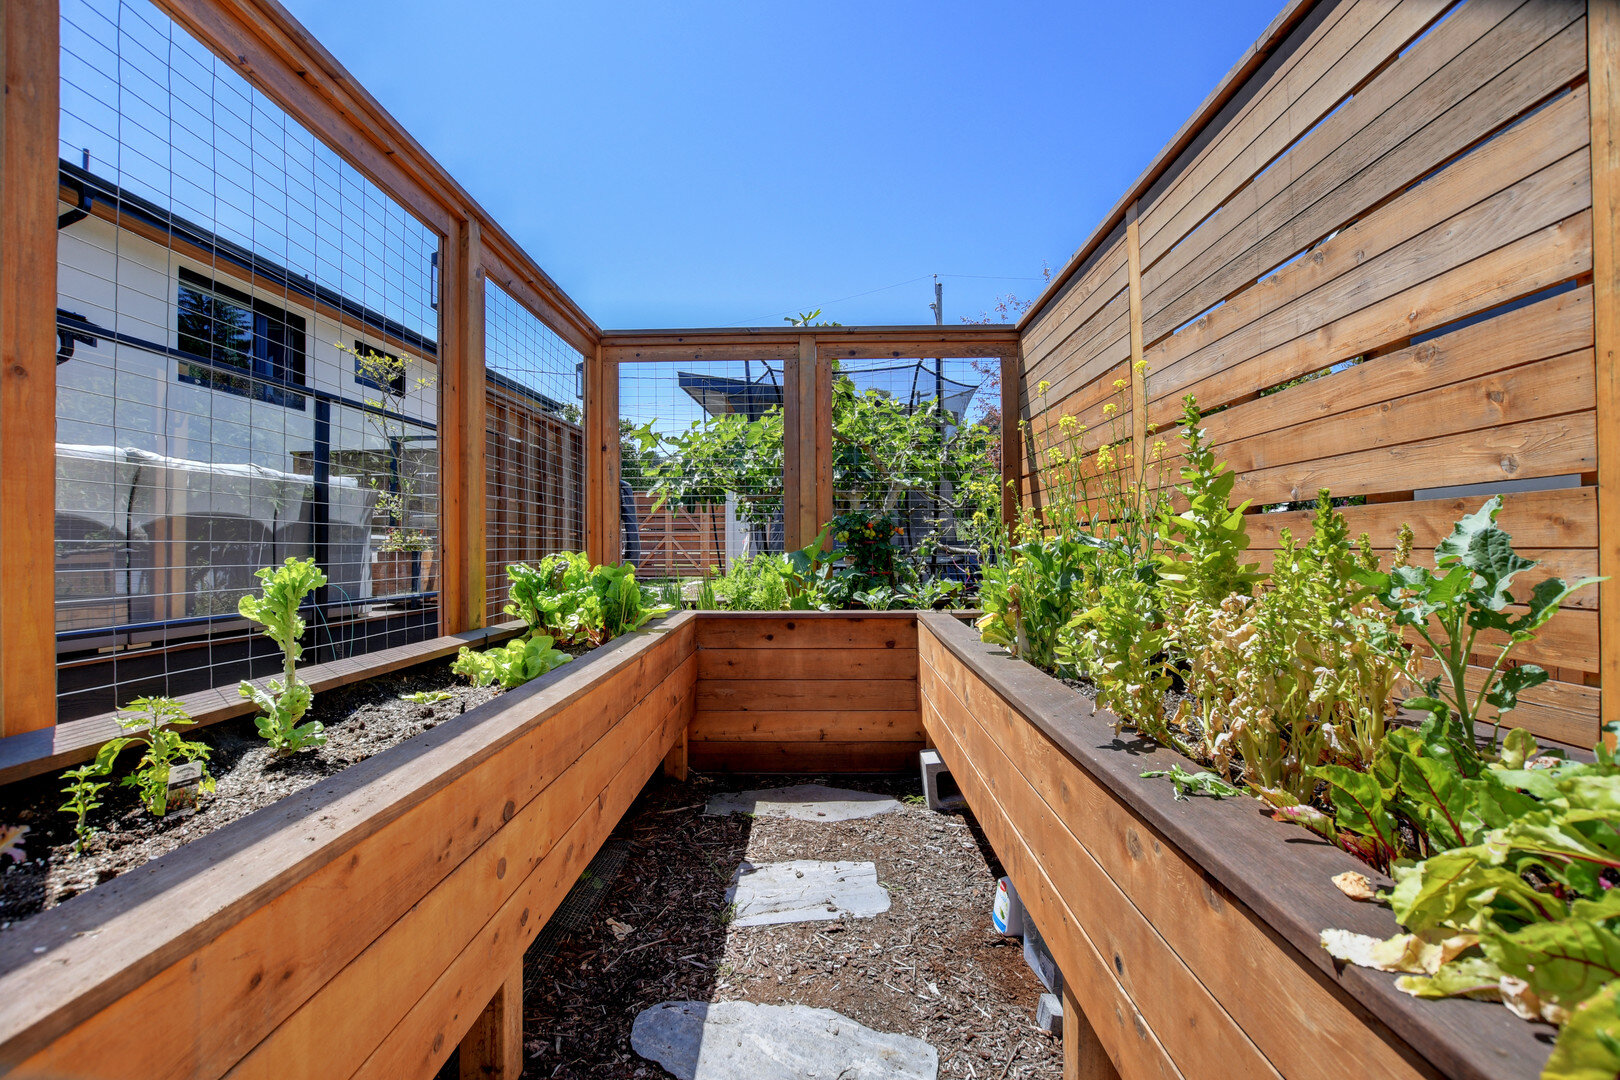 2-raised-vegetable-garden-veggies-custom-planter-upstream-carpentry.jpg